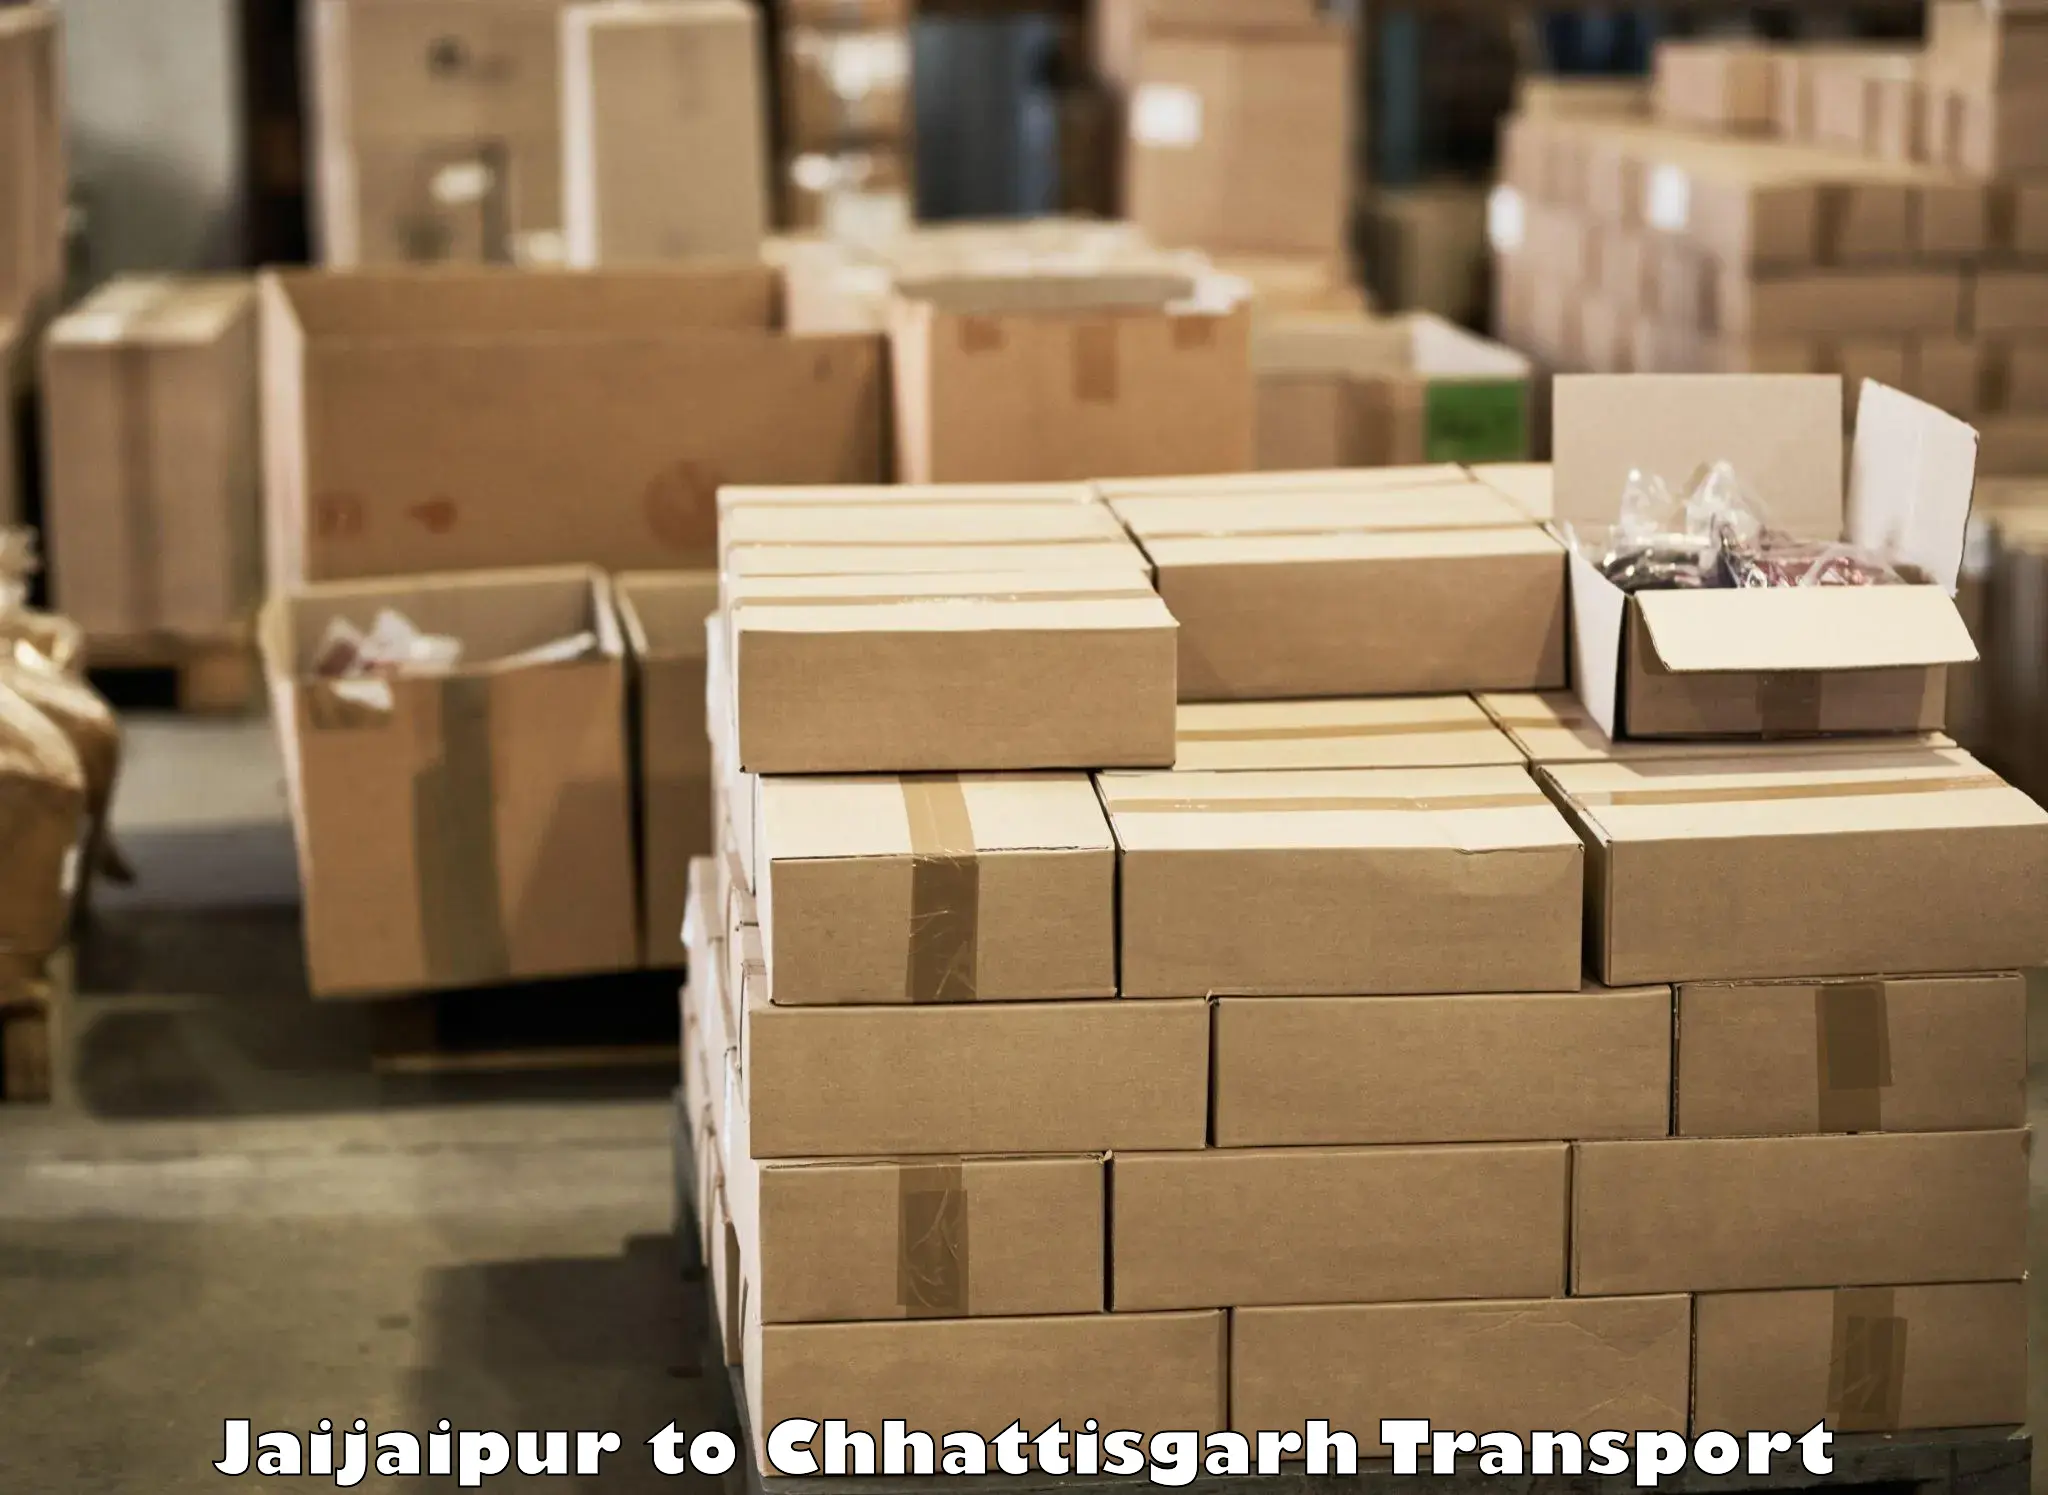 Daily parcel service transport Jaijaipur to Bastar